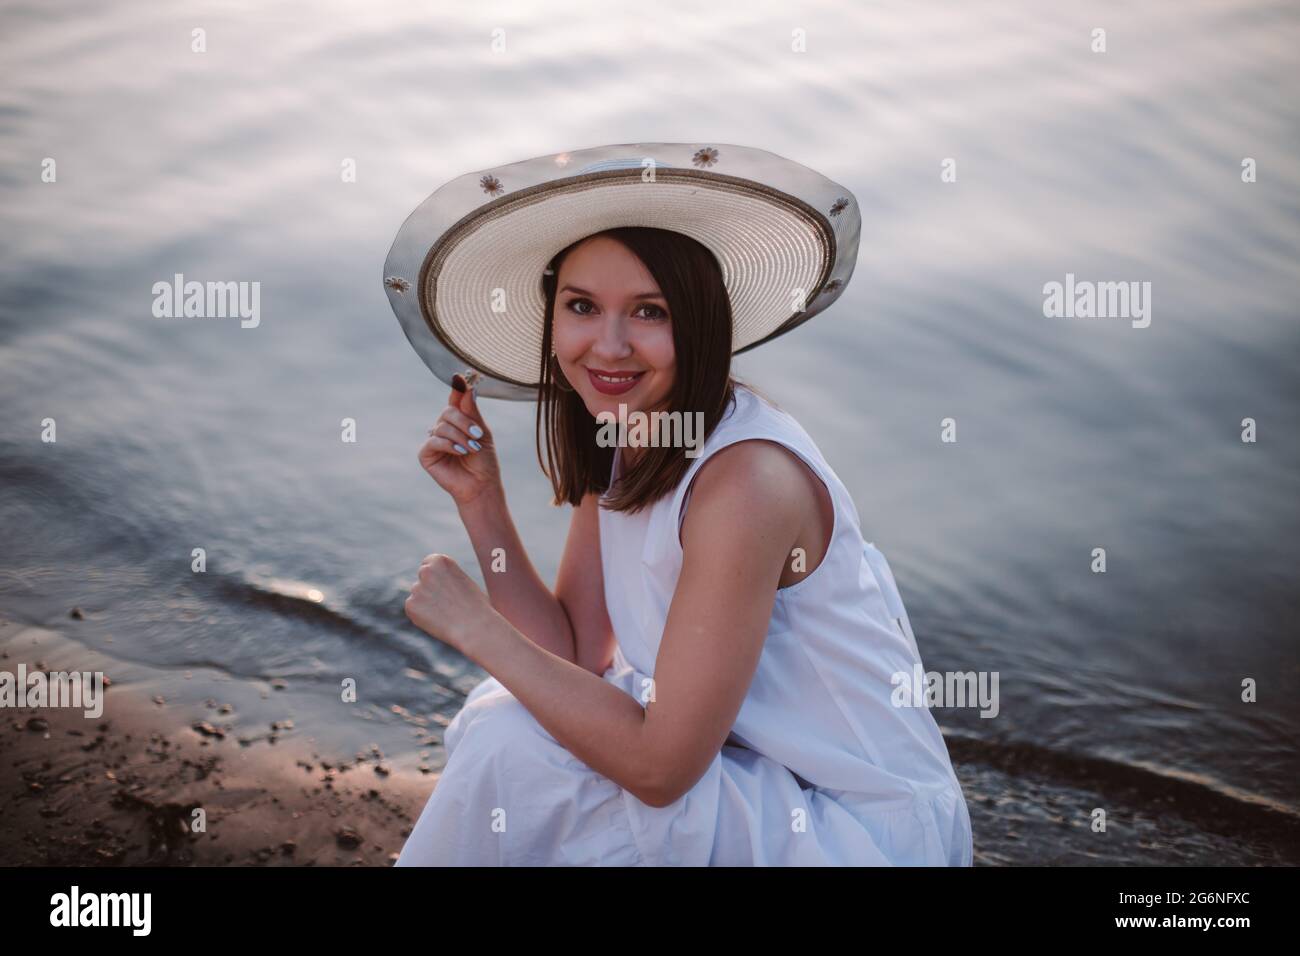 un portrait romantique d'une fille rieuse dans une sunress blanche et un chapeau de paille sur une date sur la plage au bord de la rivière ou de la mer au coucher du soleil Banque D'Images